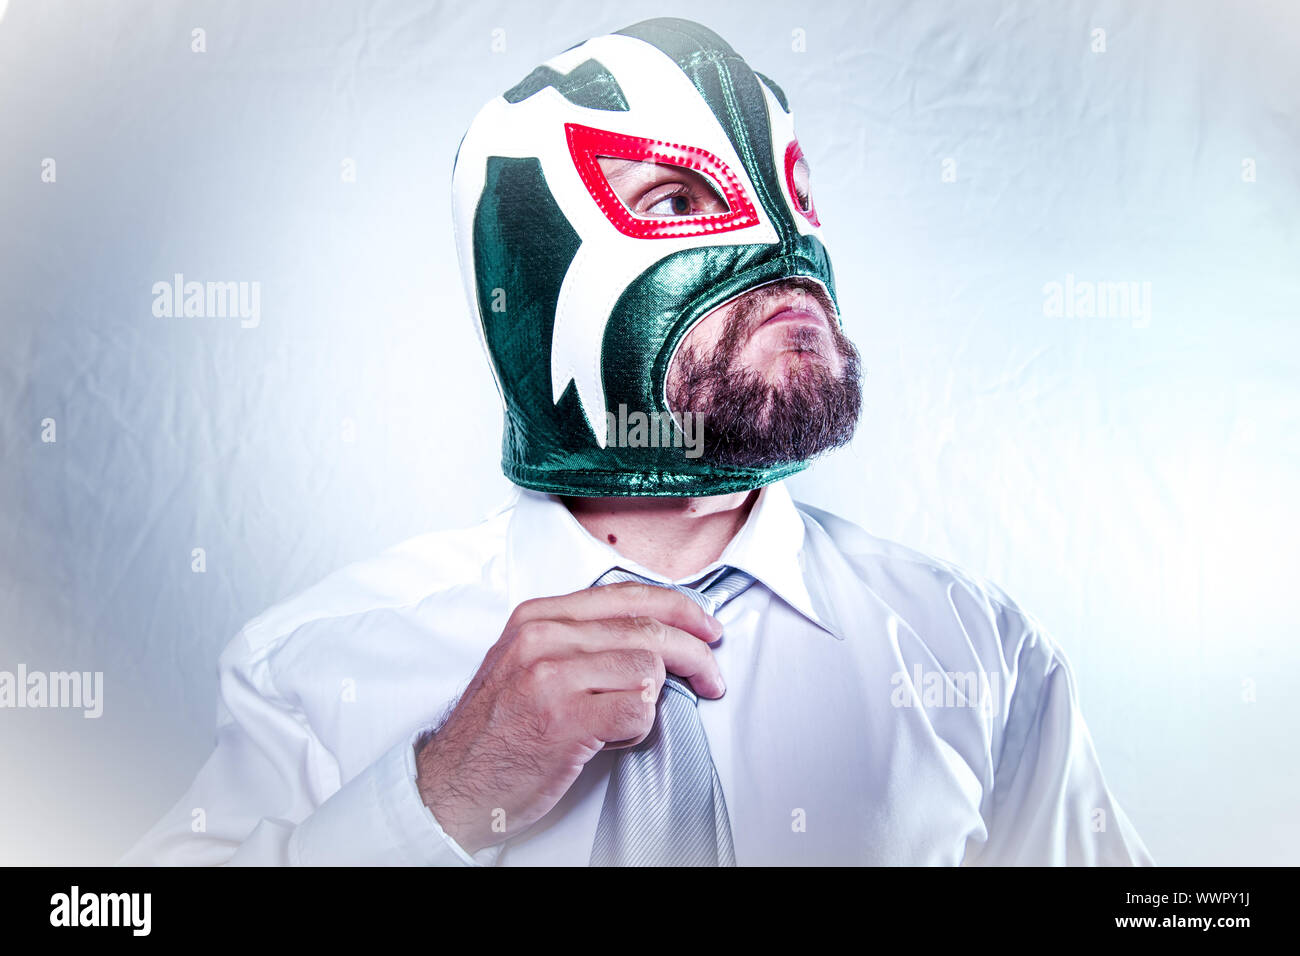 Imprenditore arrabbiato con il lottatore messicano maschera, espressioni della collera e della rabbia Foto Stock